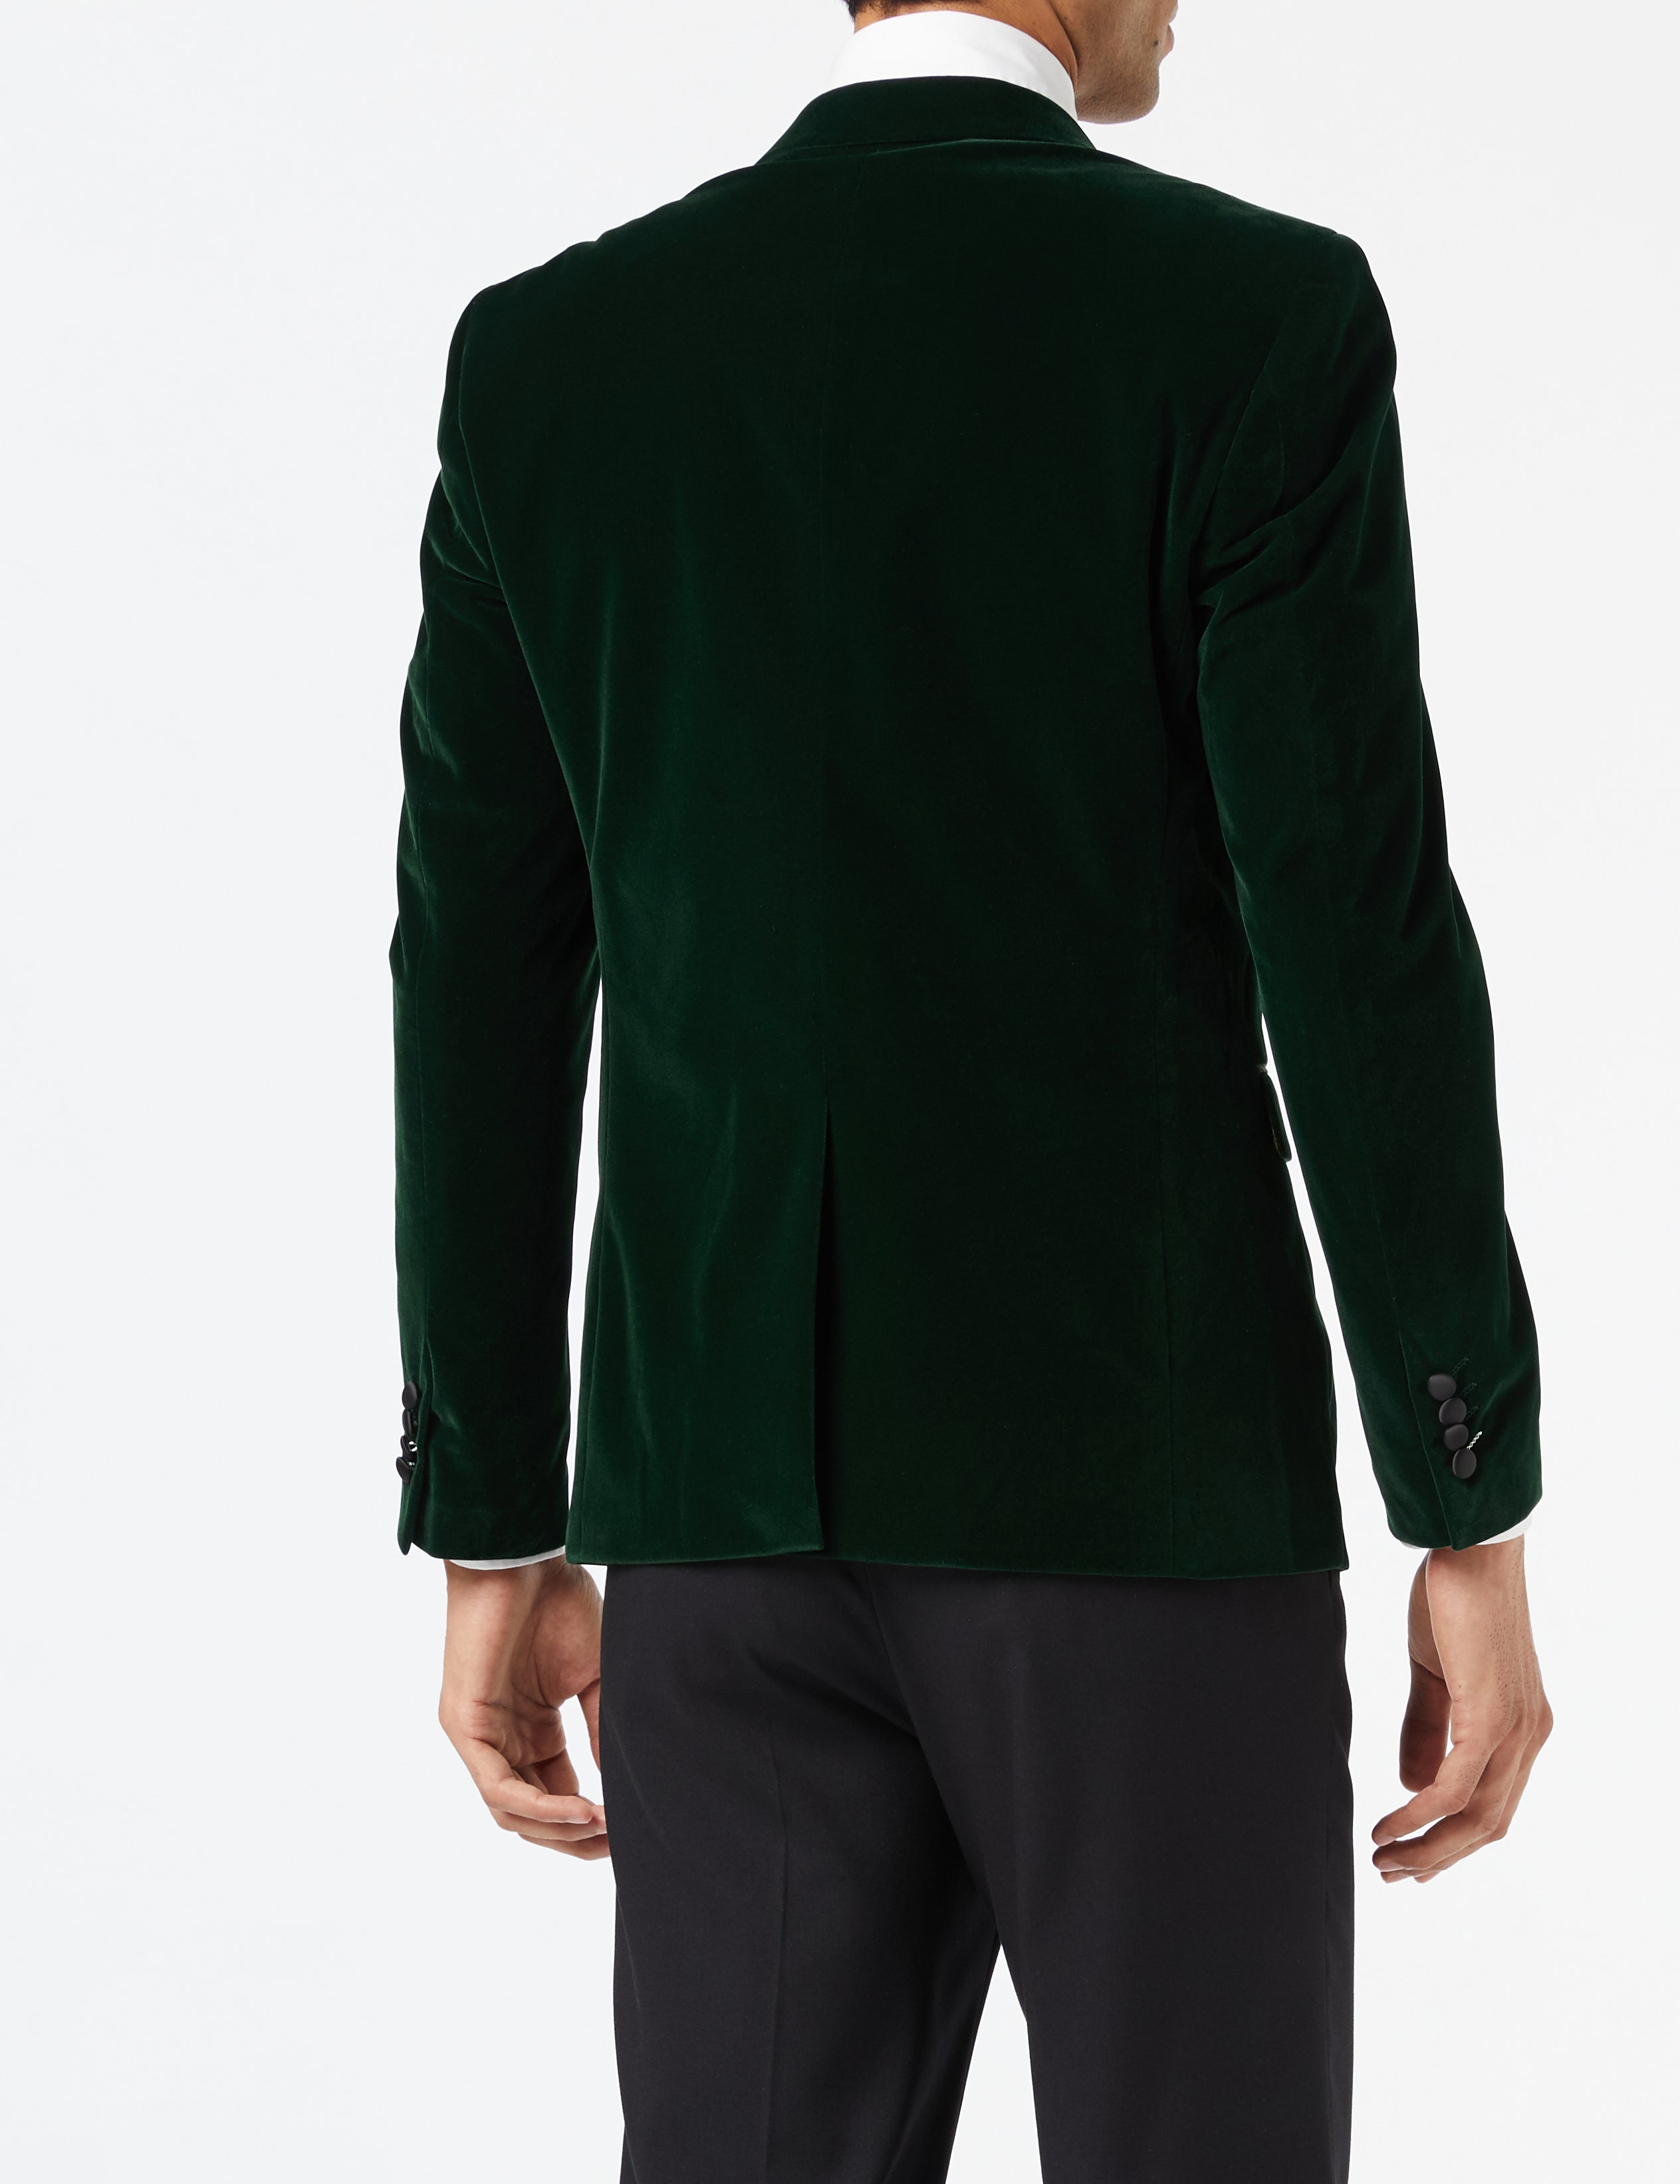 DINNER MAK - Green Soft Velvet Tuxedo Jacket